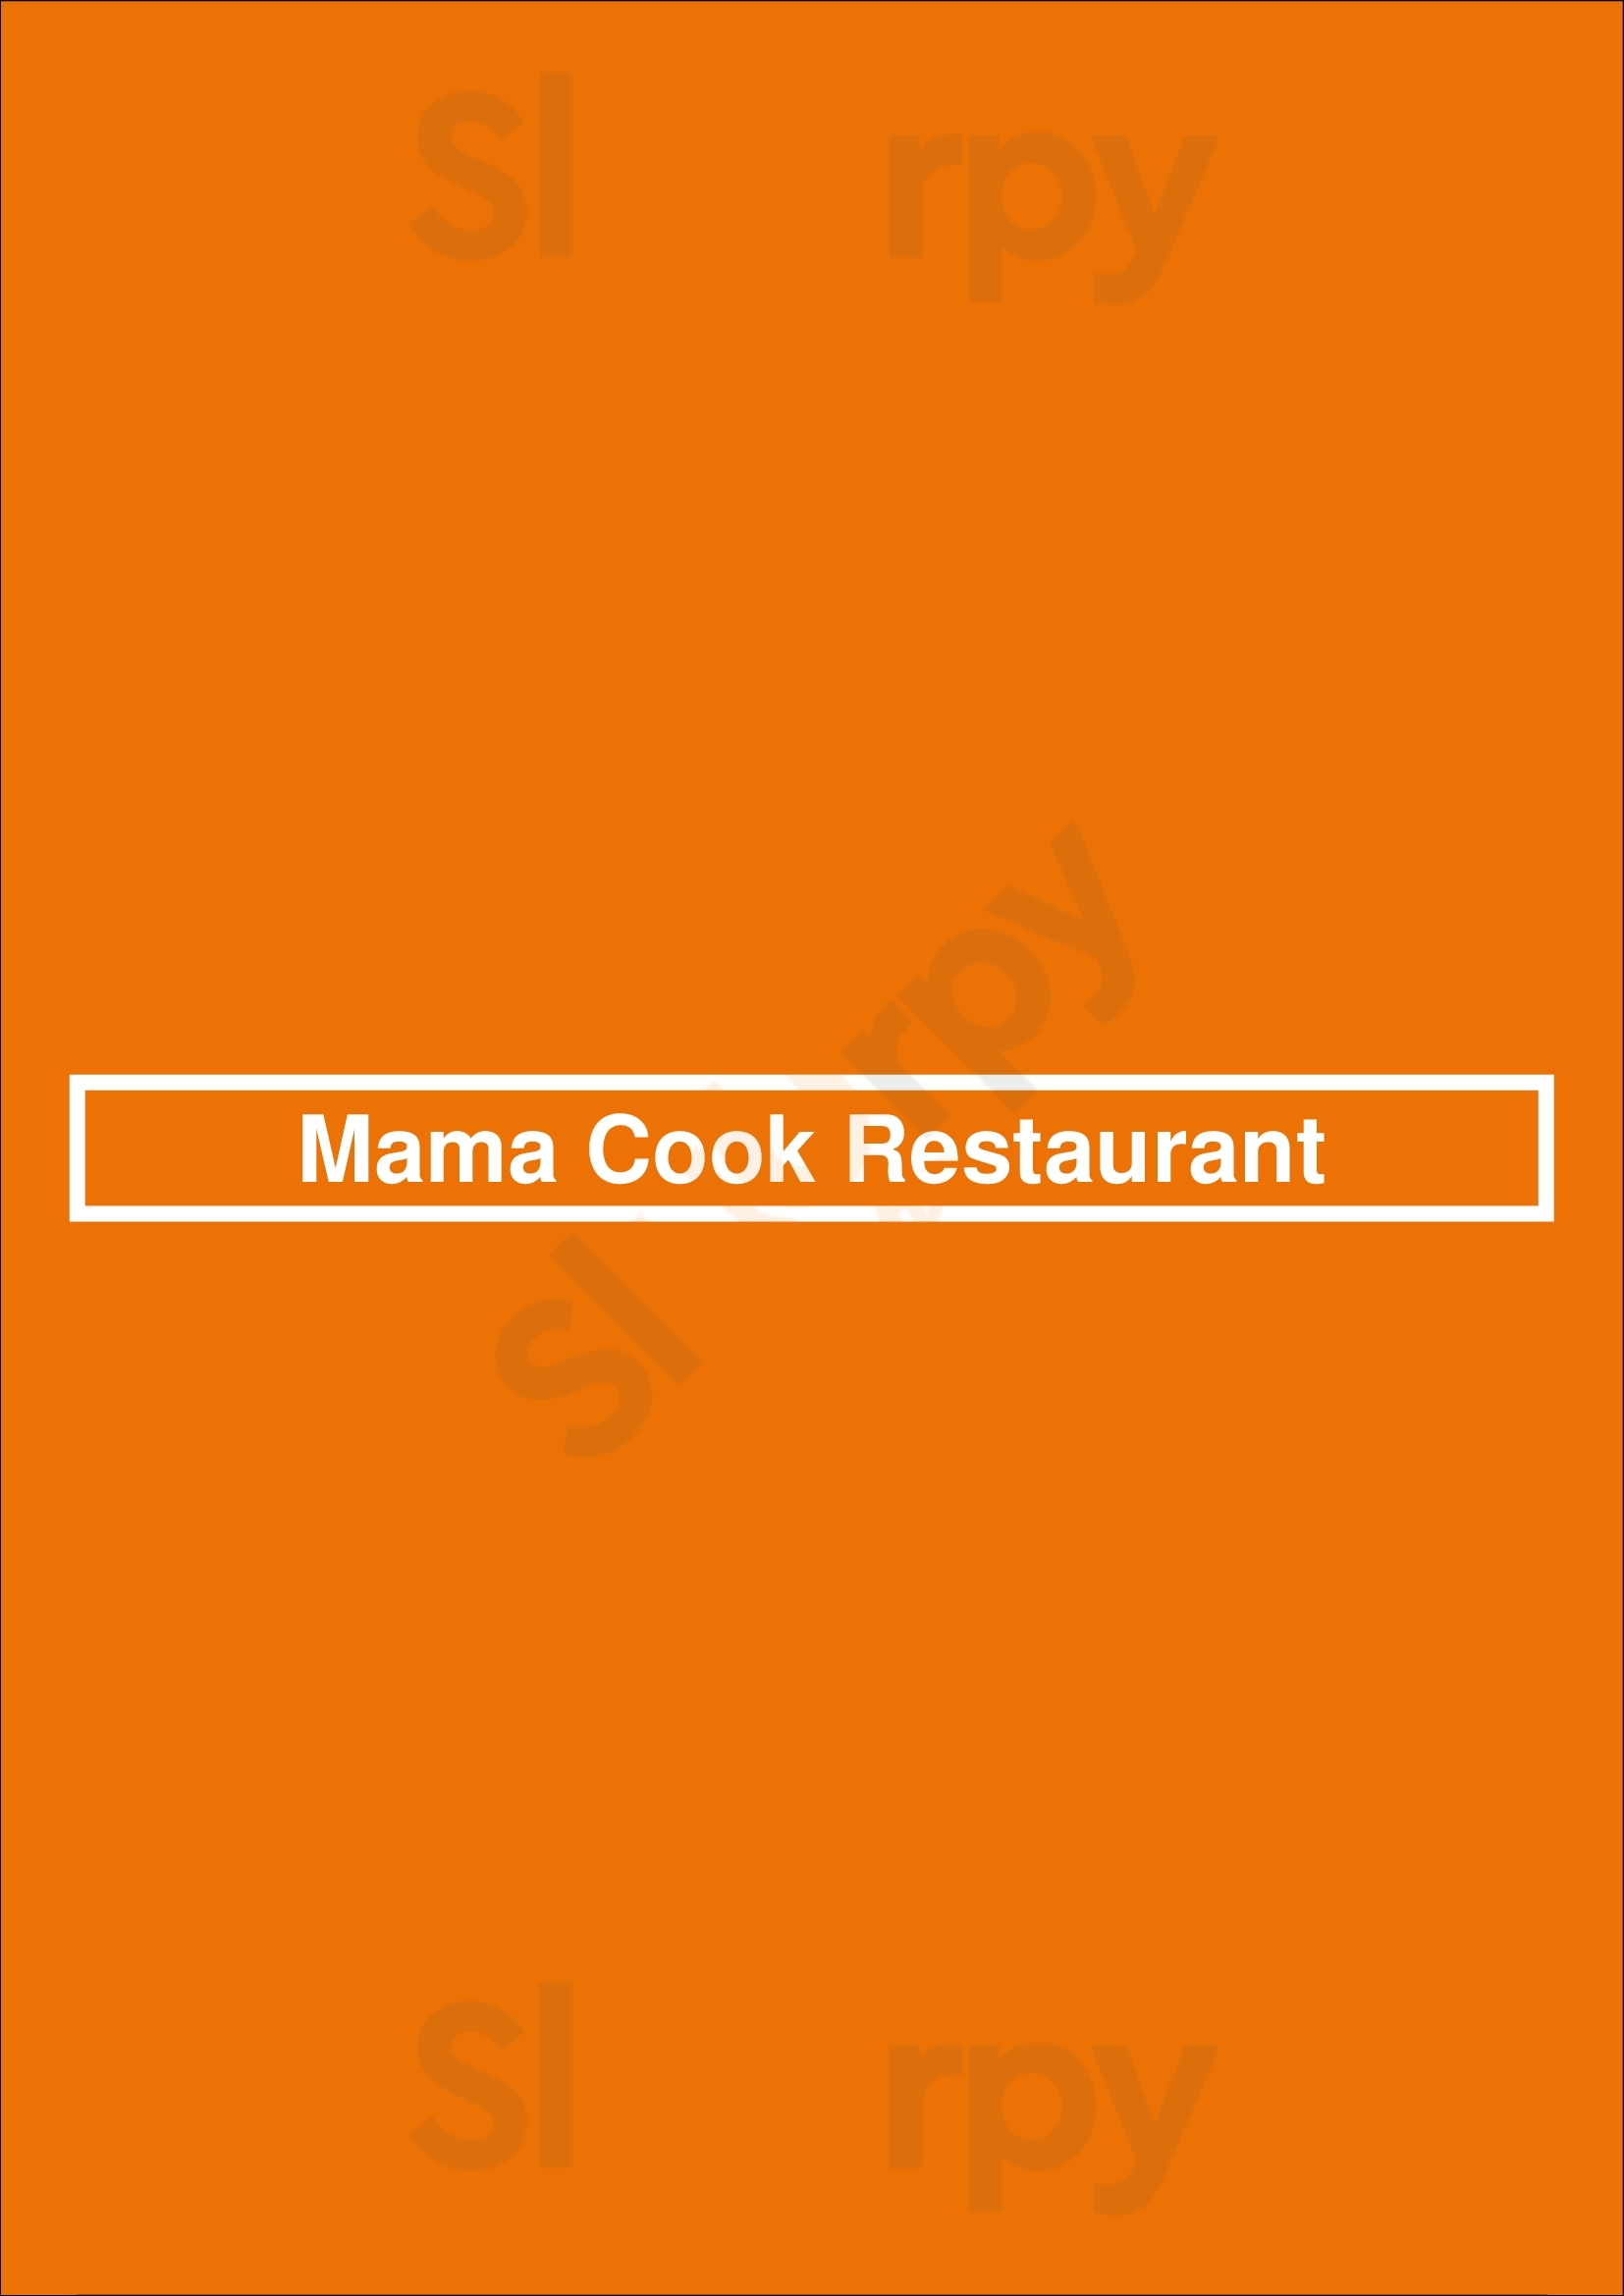 Mama Cook Restaurant Berlin Menu - 1